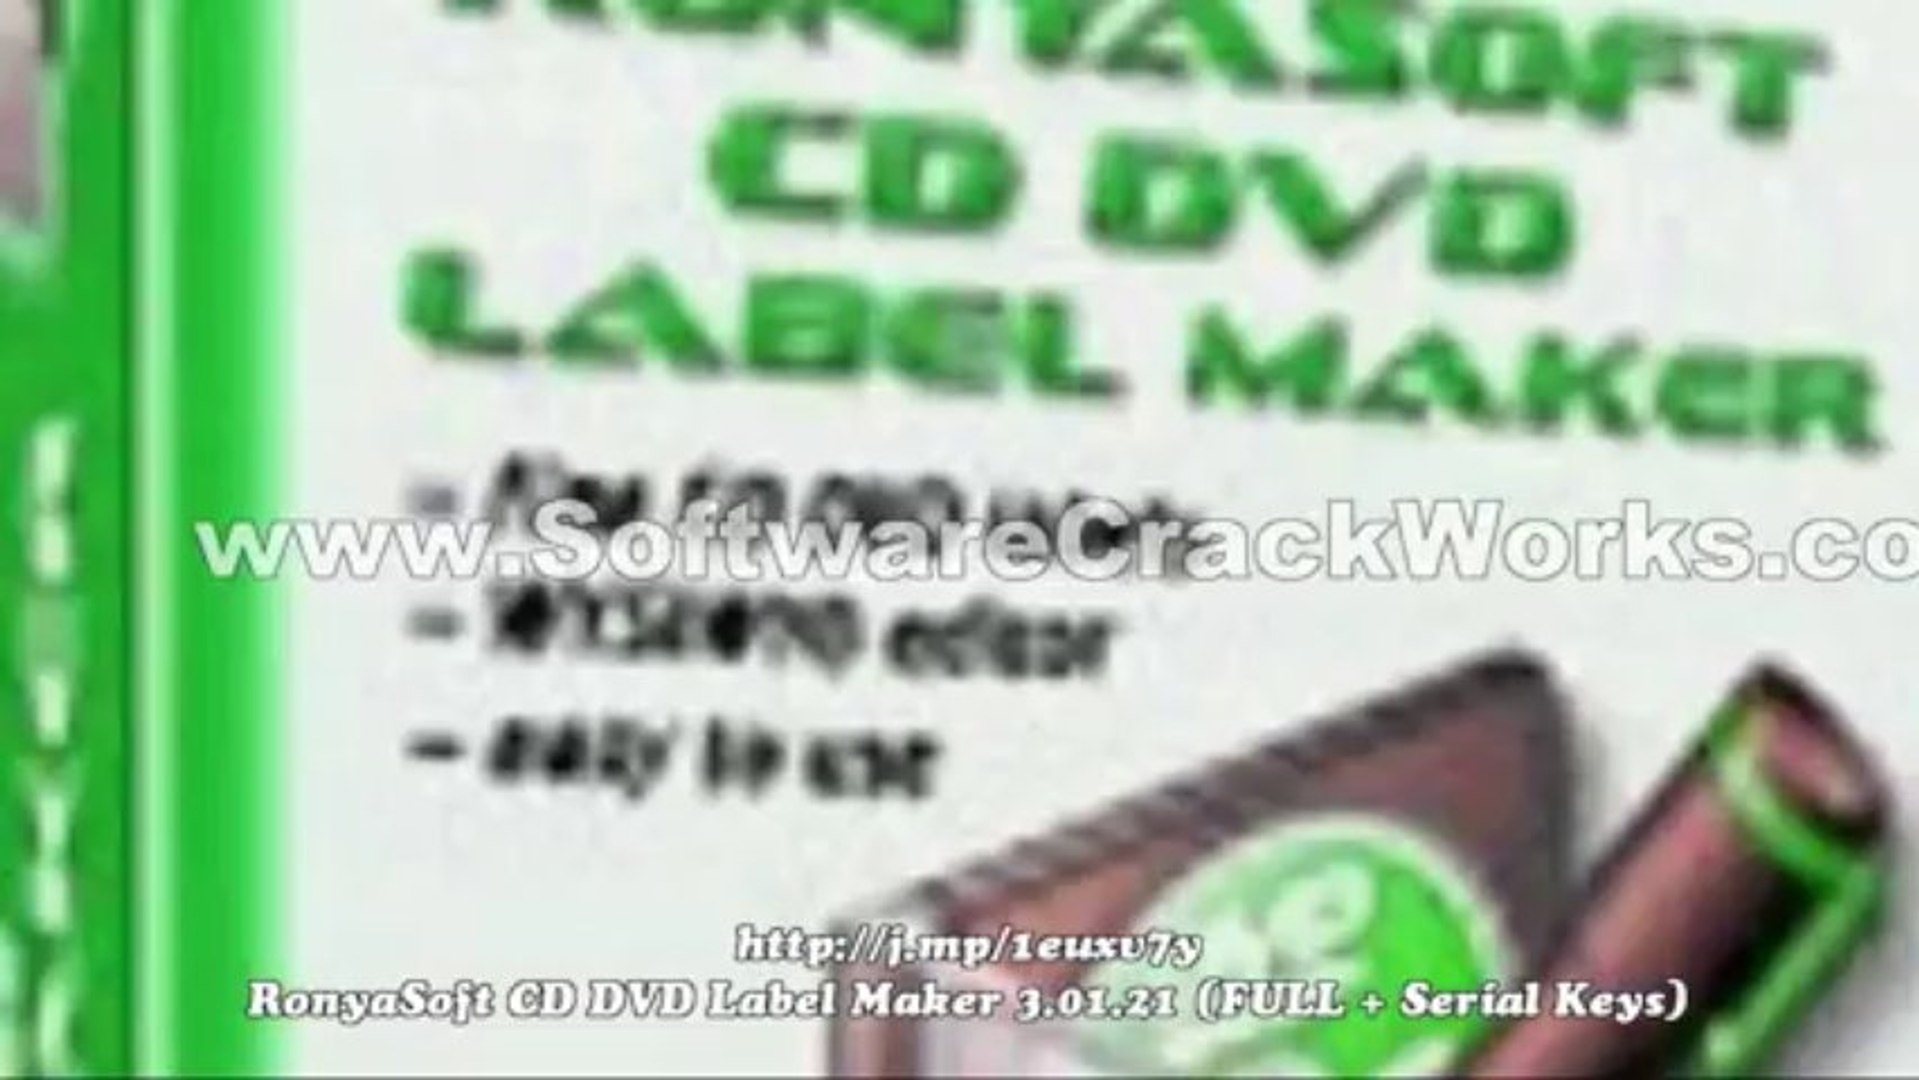 RonyaSoft CD DVD Label Maker 3.01.21 (FULL + Serial Keys) - video  Dailymotion